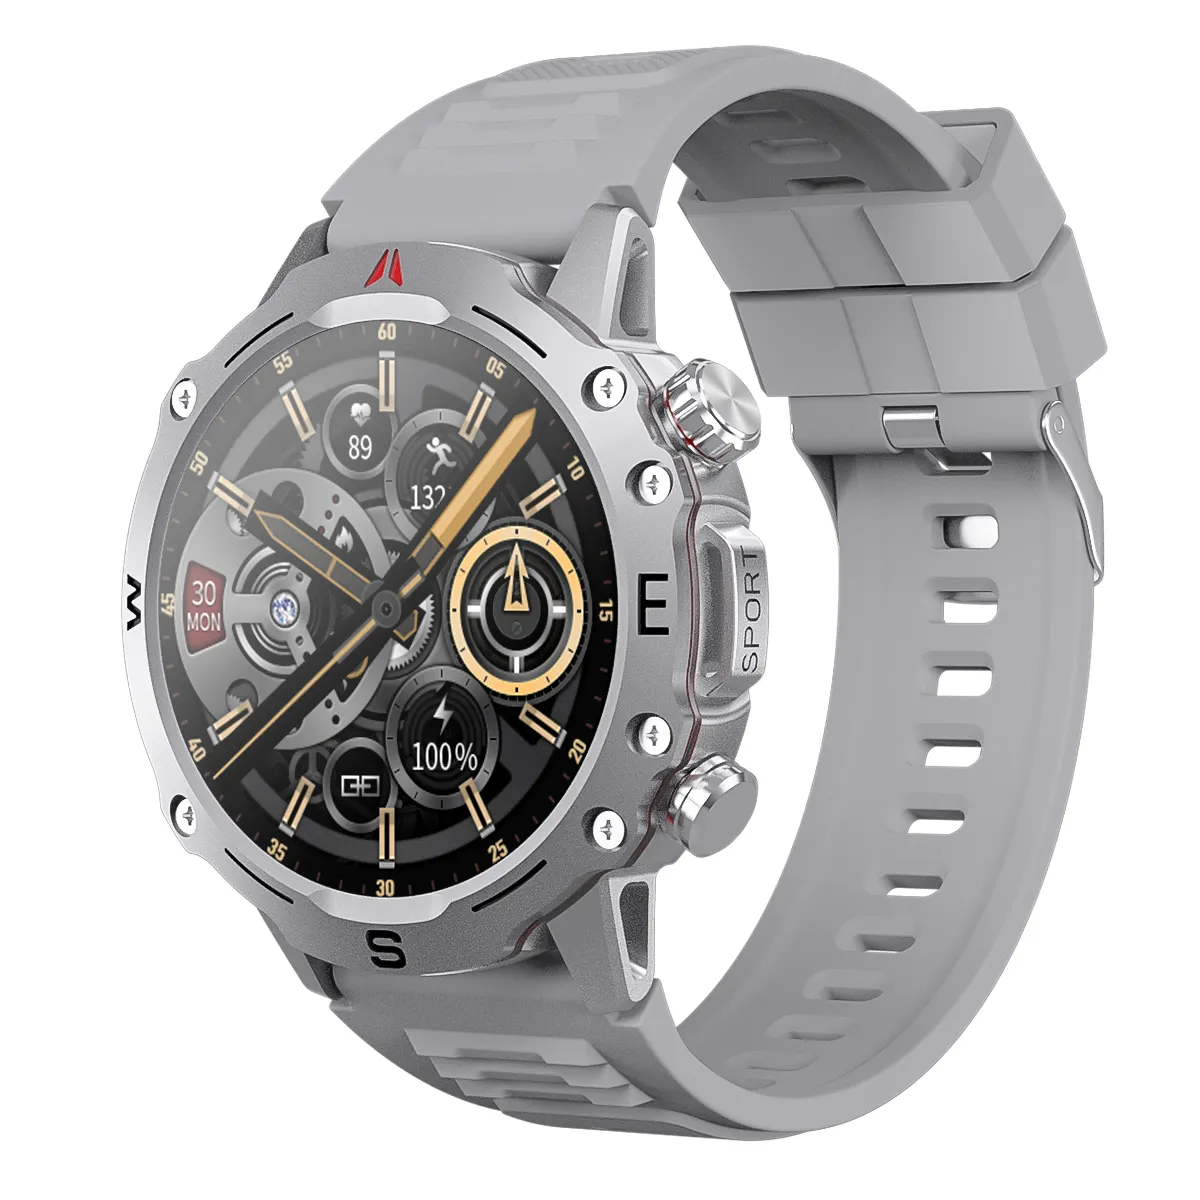 Großhandels preis OD2 Smart Watch 1,5-Zoll-kabelloses Laden Sport Smartwatch BT Calling Compass NFC Round Dial GPS-Uhr